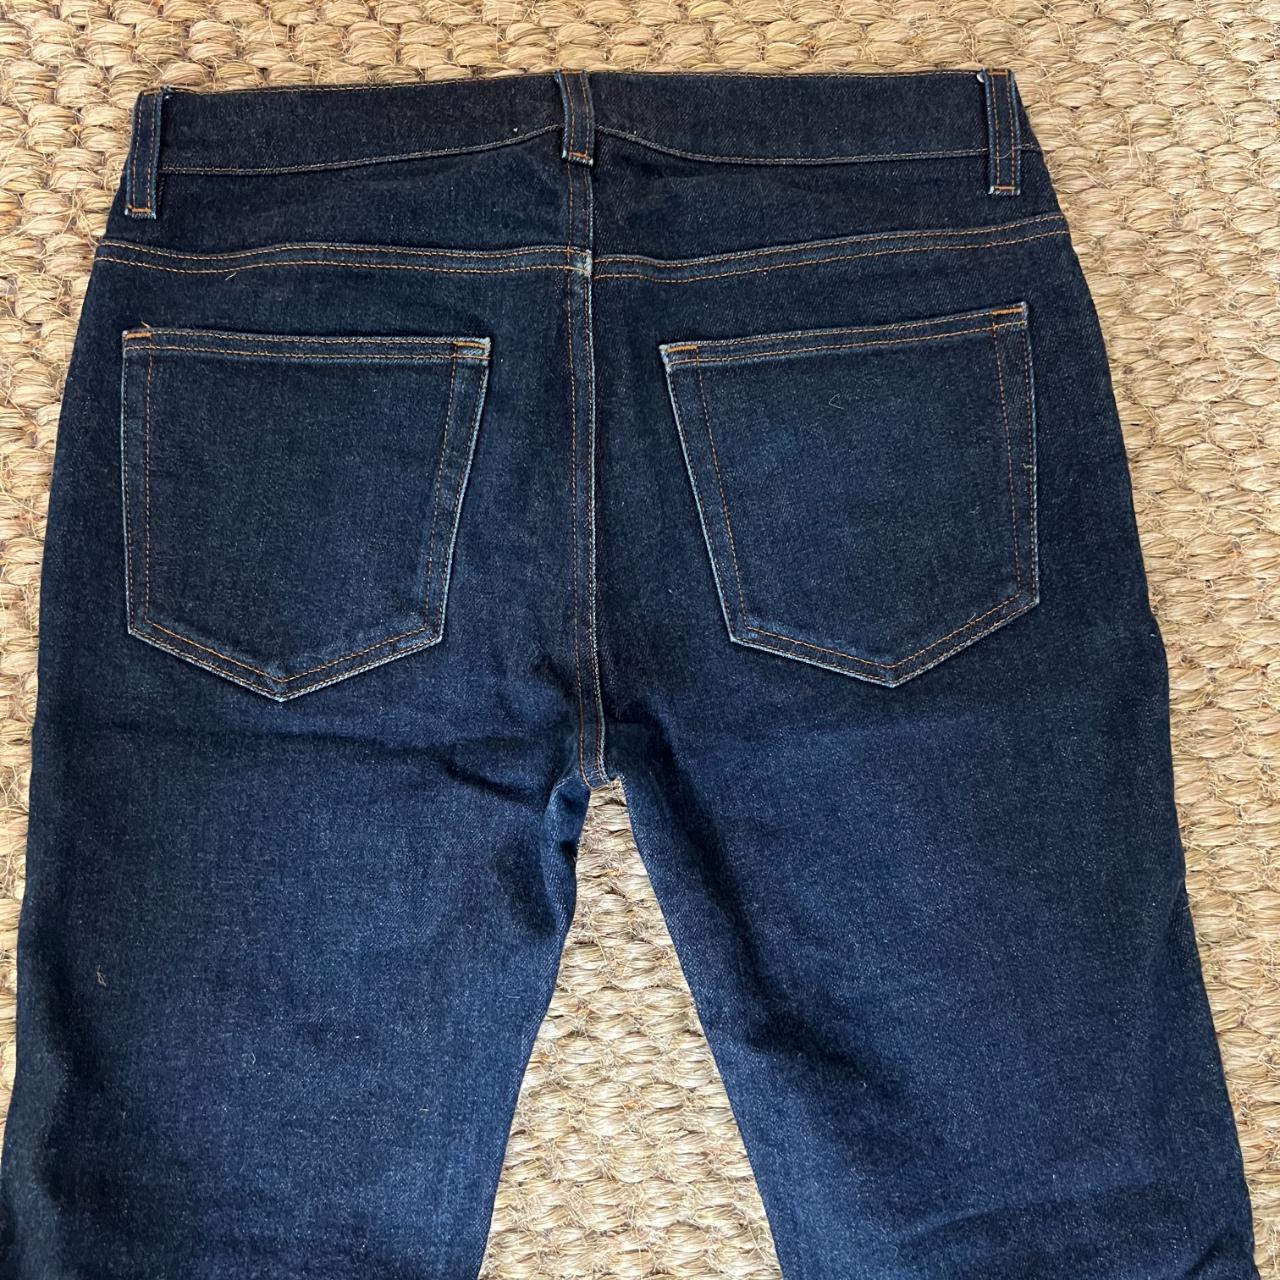 Acne Ace Stretch Raw Denim jeans. Size 31/32. Barely... - Depop